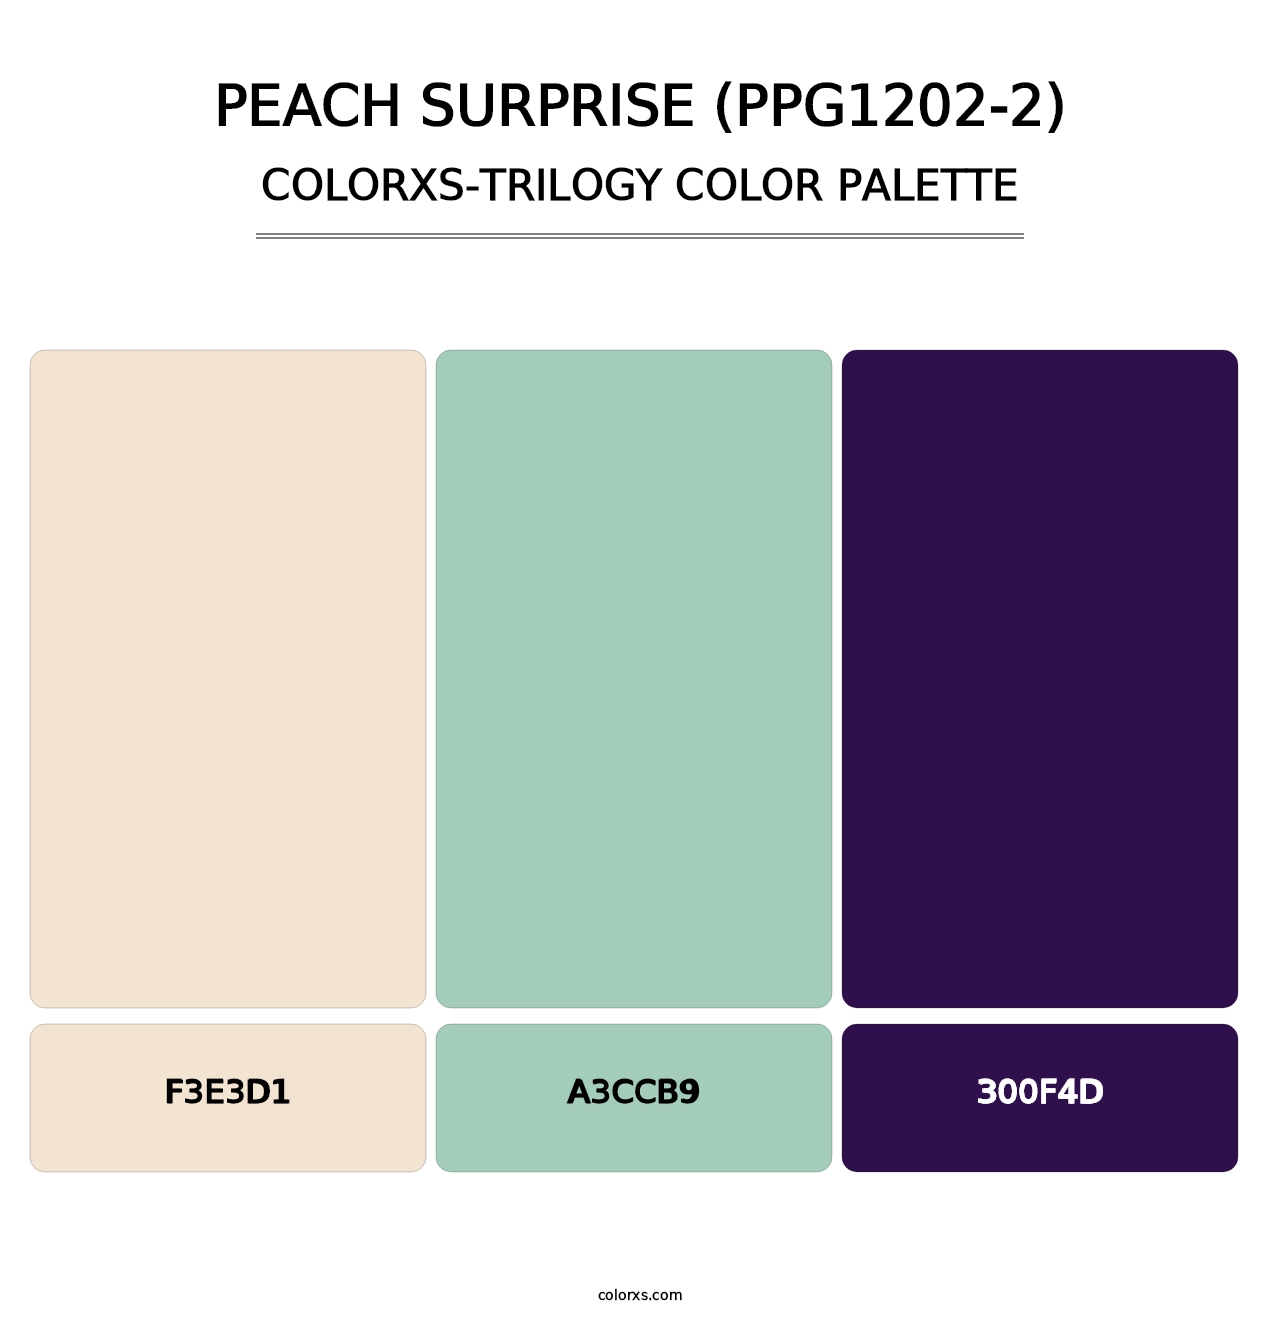 Peach Surprise (PPG1202-2) - Colorxs Trilogy Palette